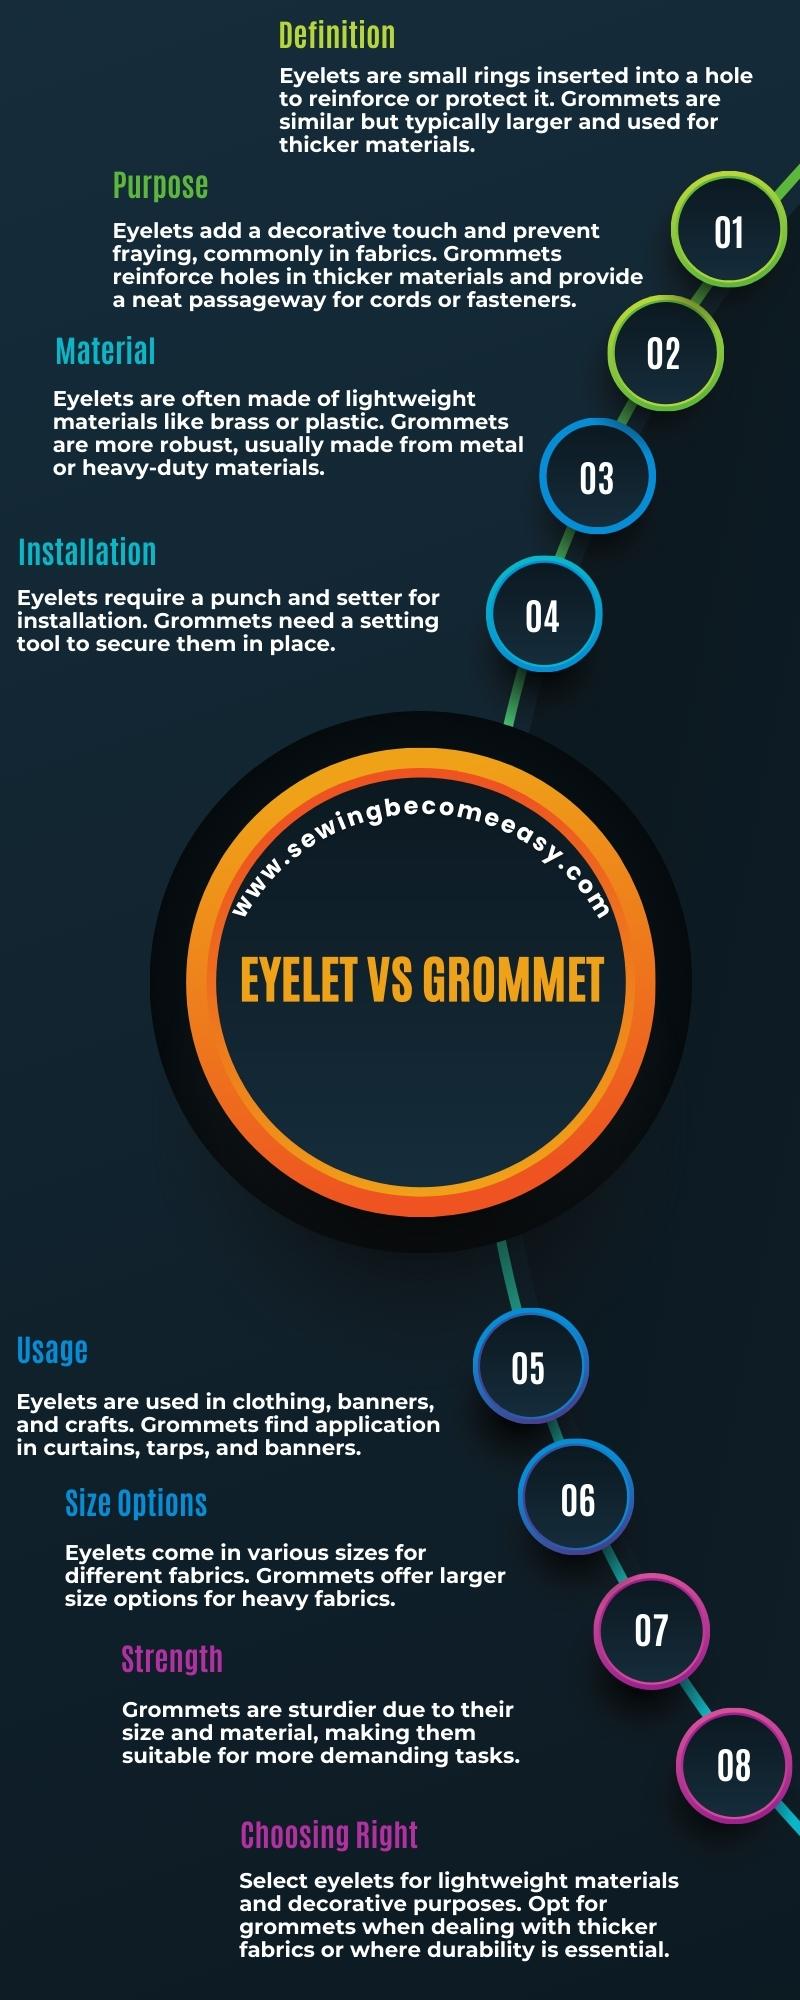 Comparing Eyelet vs Grommet